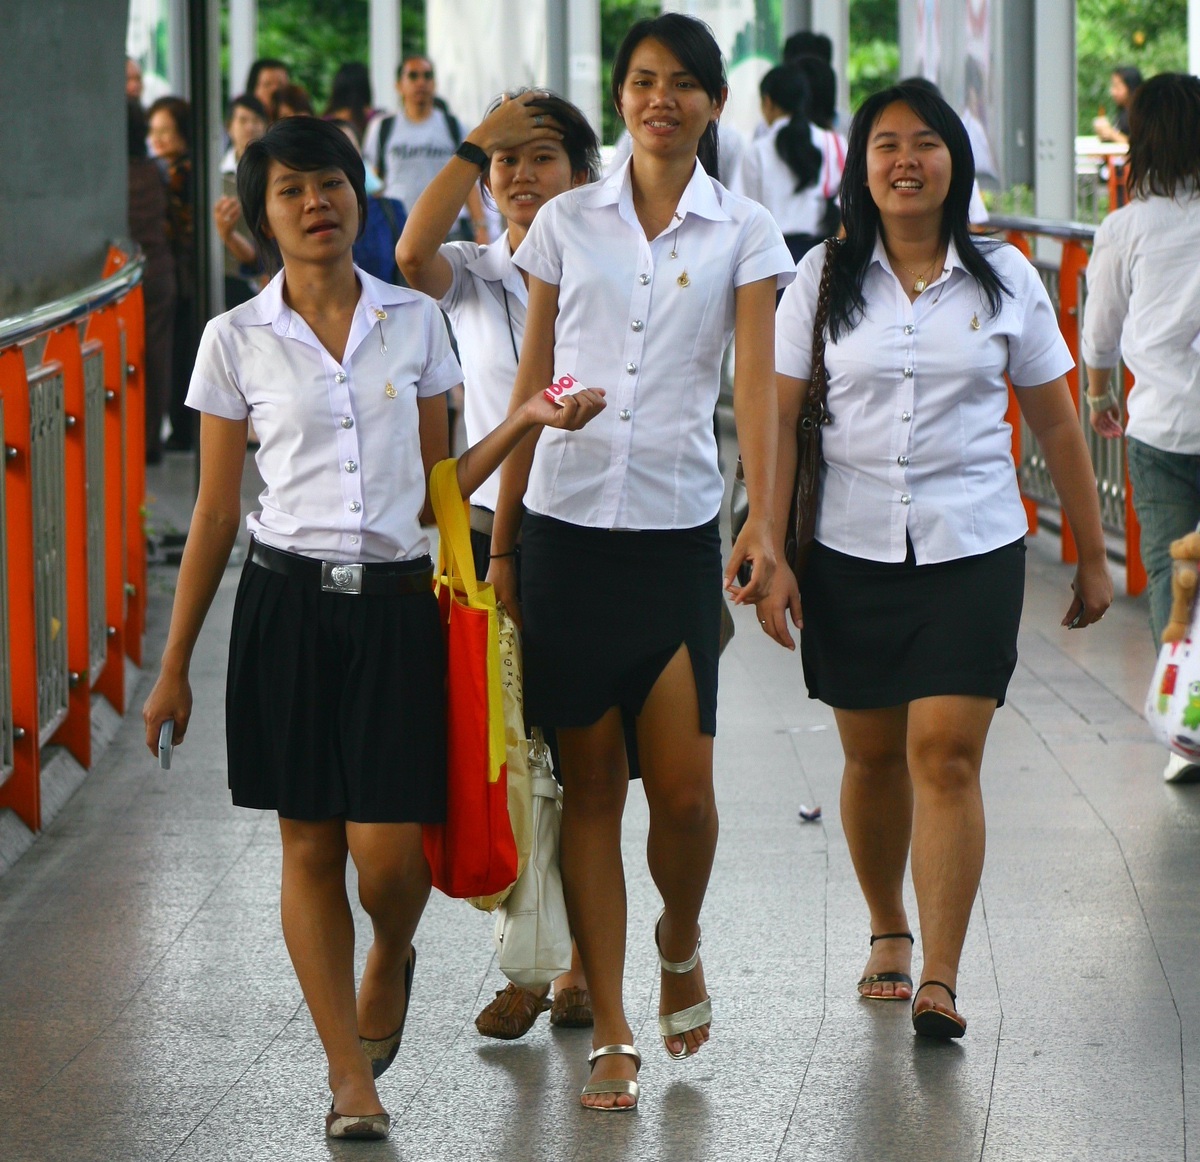 Thai University Students at Victory Monument, Bangkok.